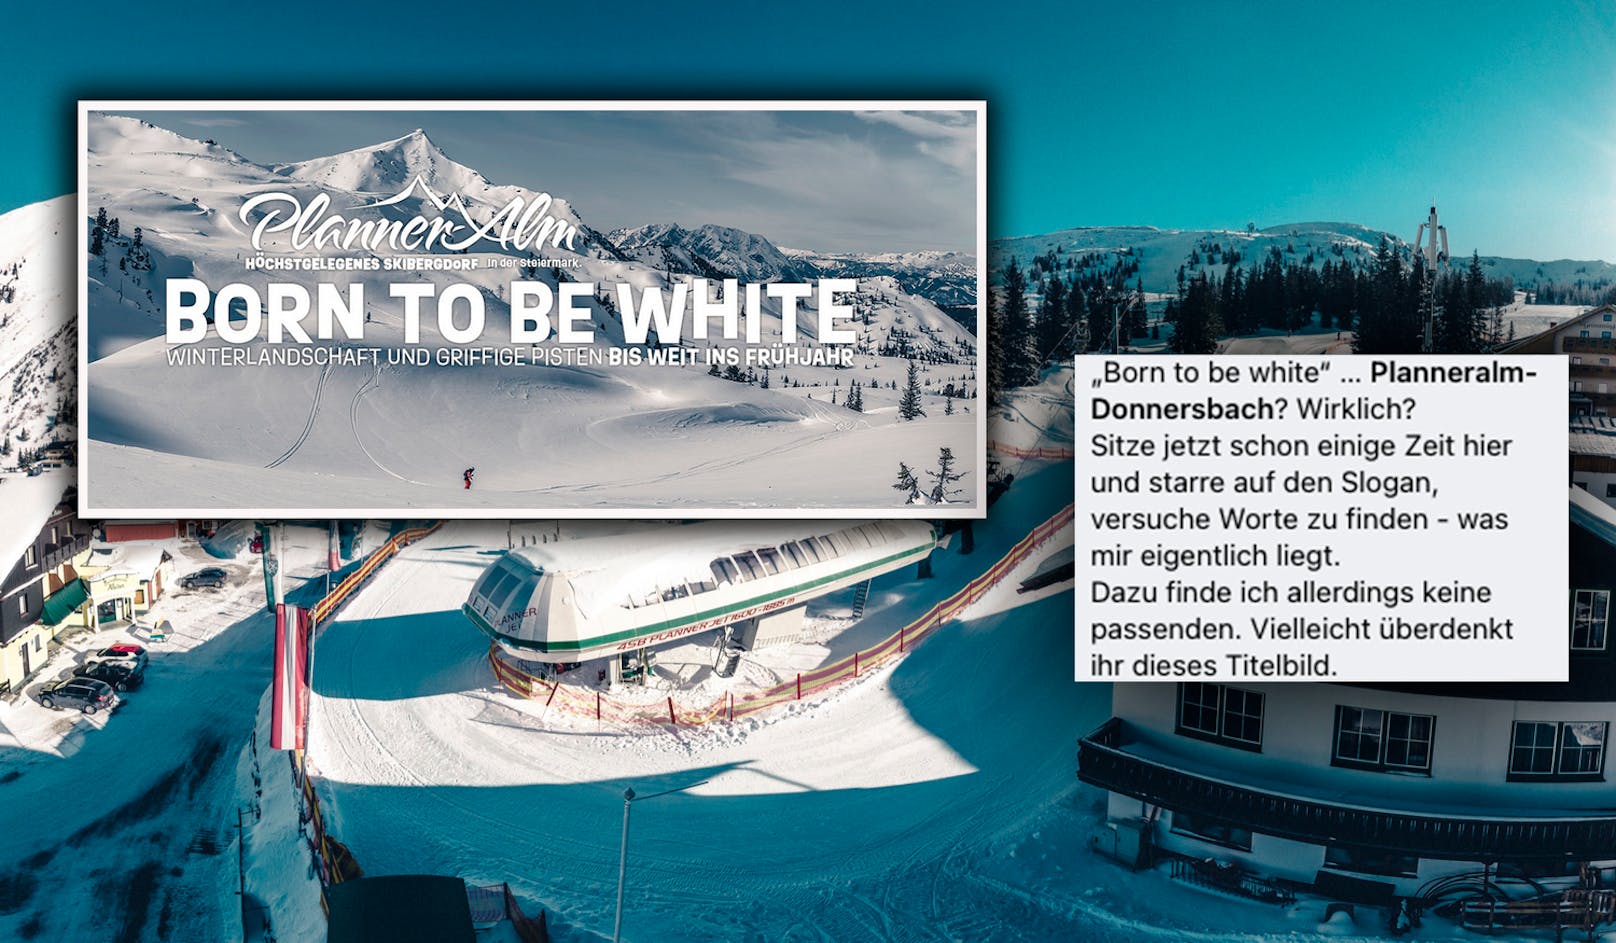 Für ihren Werbeslogan "Born to be white" erntete das Skigebiet Planner-Alm Kritik in den sozialen Medien.